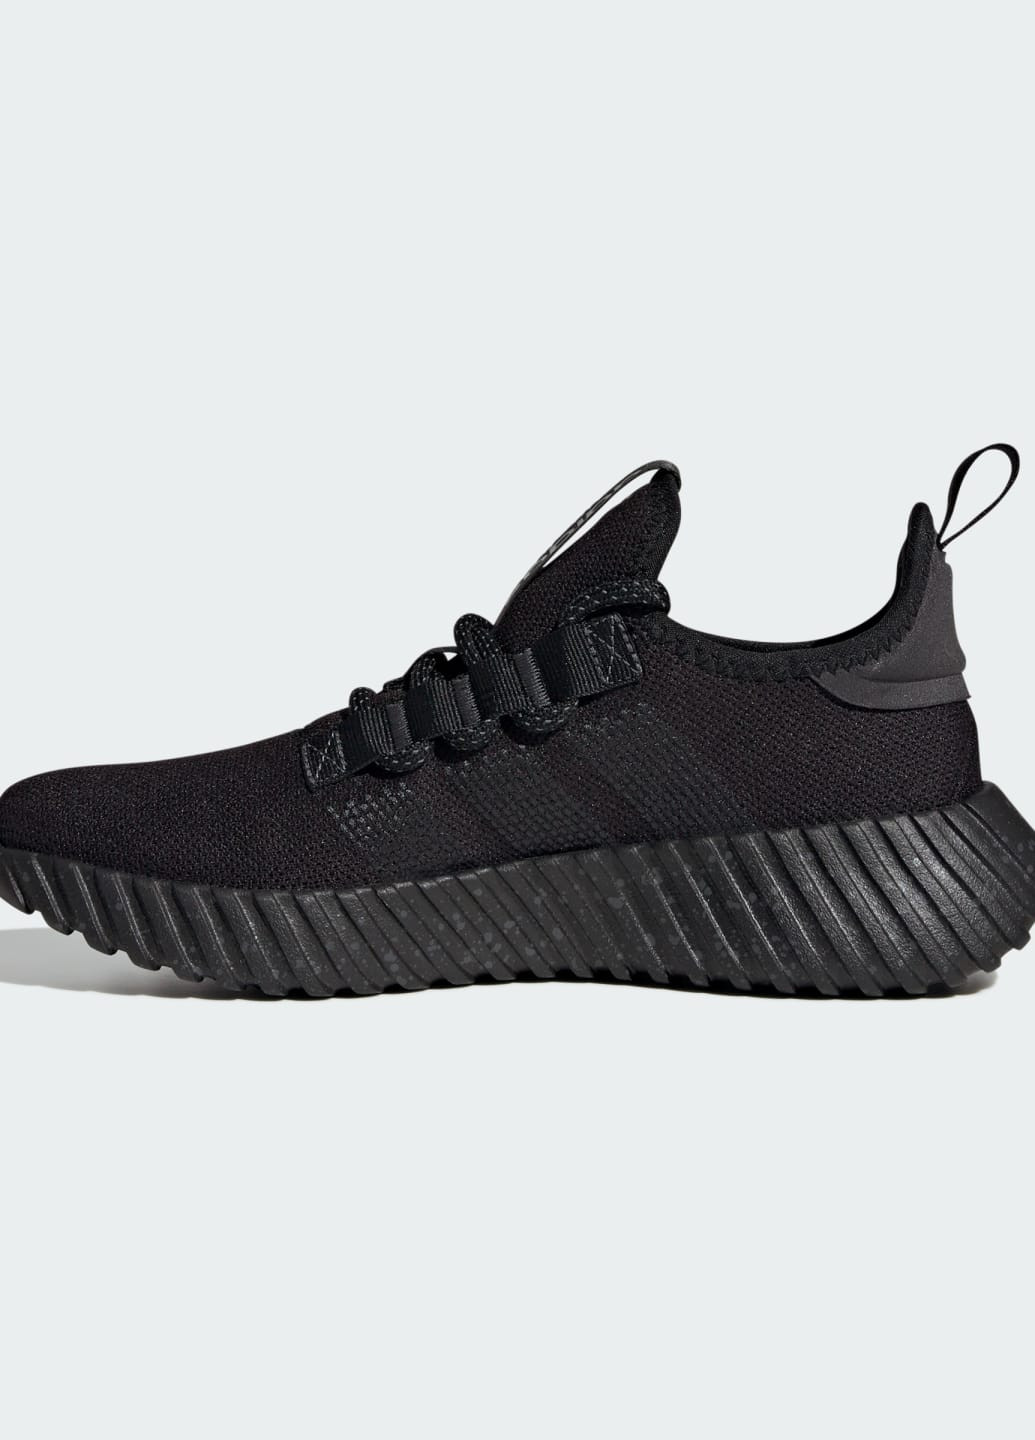 Черные всесезонные кроссовки kaptir flow adidas